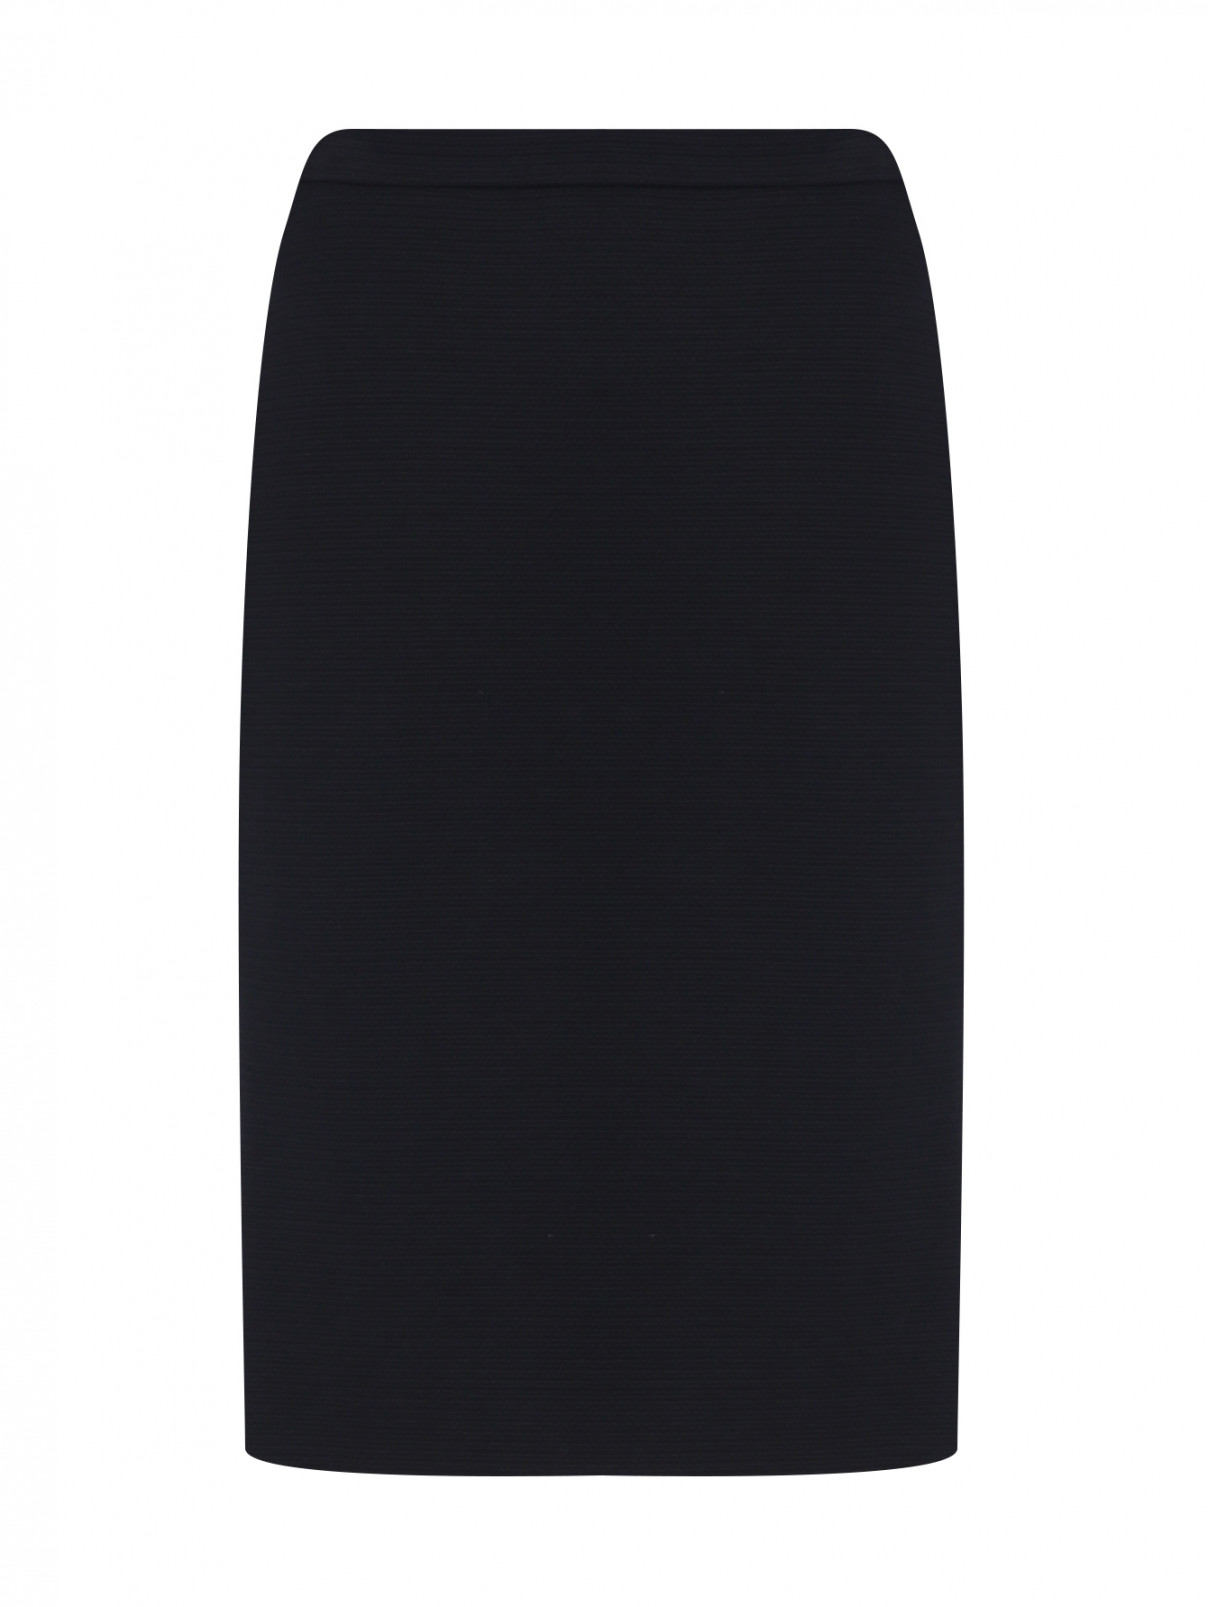 Трикотажная юбка с разрезом BOUTIQUE MOSCHINO  –  Общий вид  – Цвет:  Черный